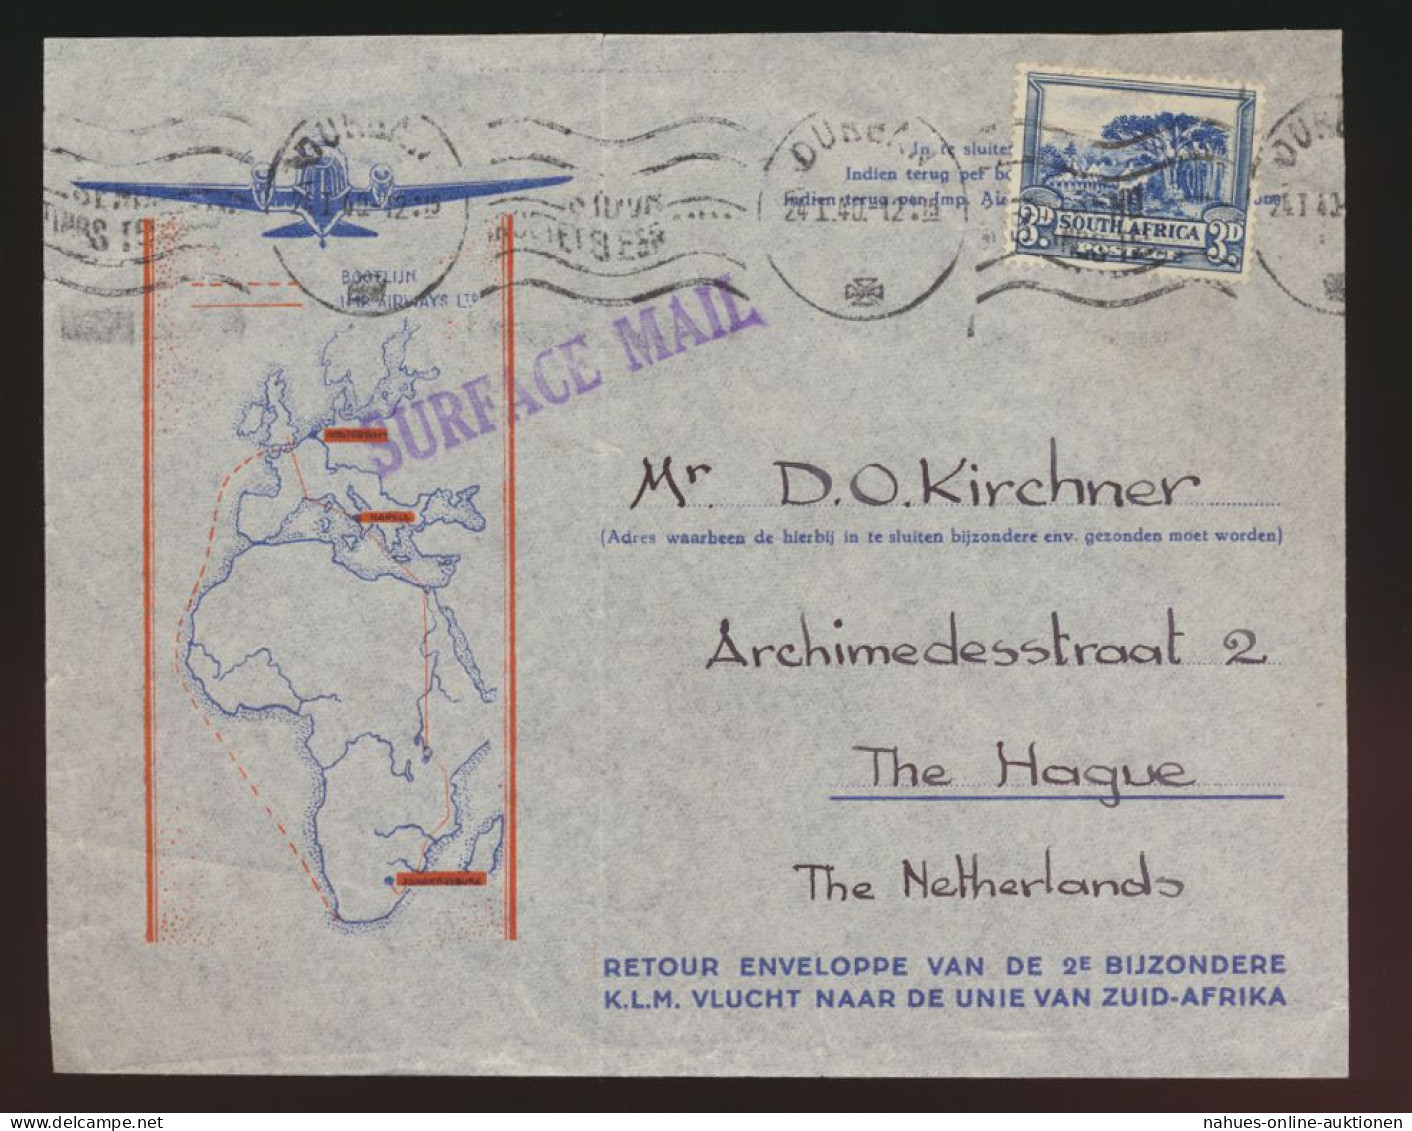 Flugpost Air Mail Südafrika Surface Mail Den Haag Niederlande Africa Cover Ton - Aerei